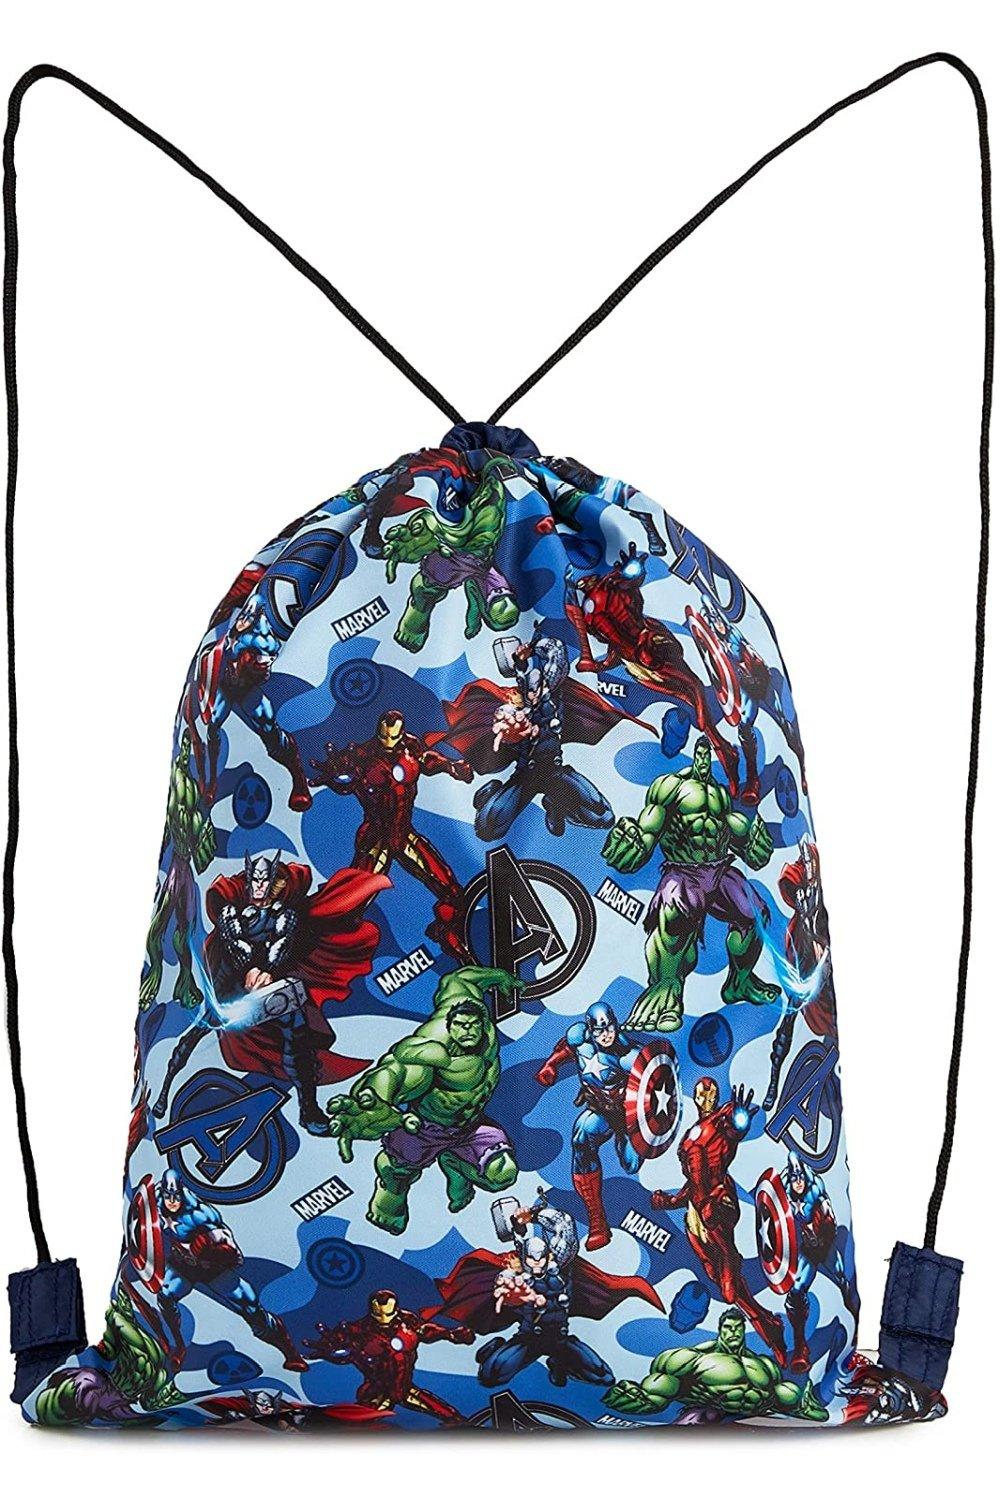 Спортивная сумка Мстителей Marvel, мультиколор спортивная сумка мстителей marvel мультиколор